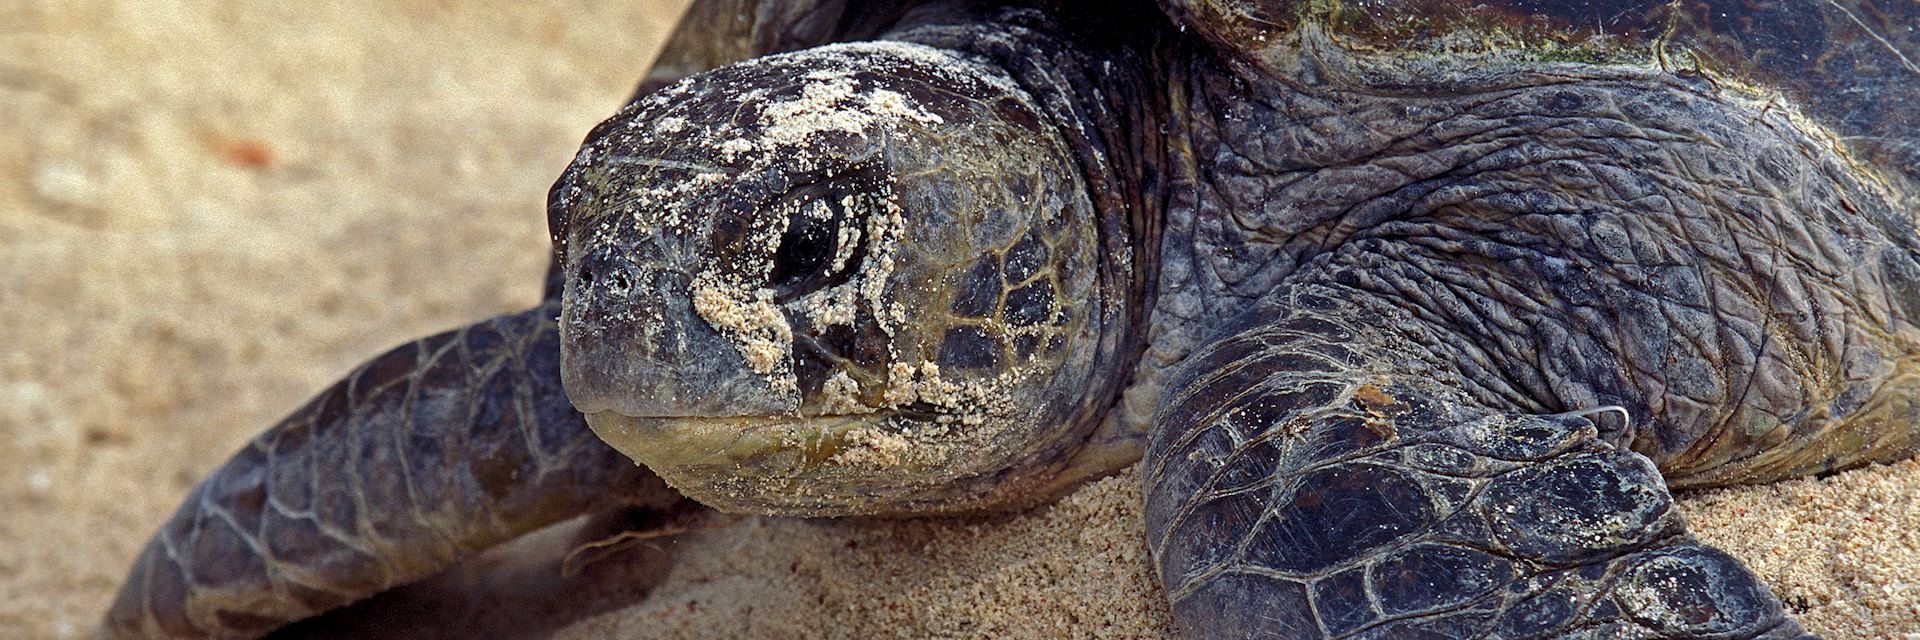 Loggerhead turtle on Wilson Island